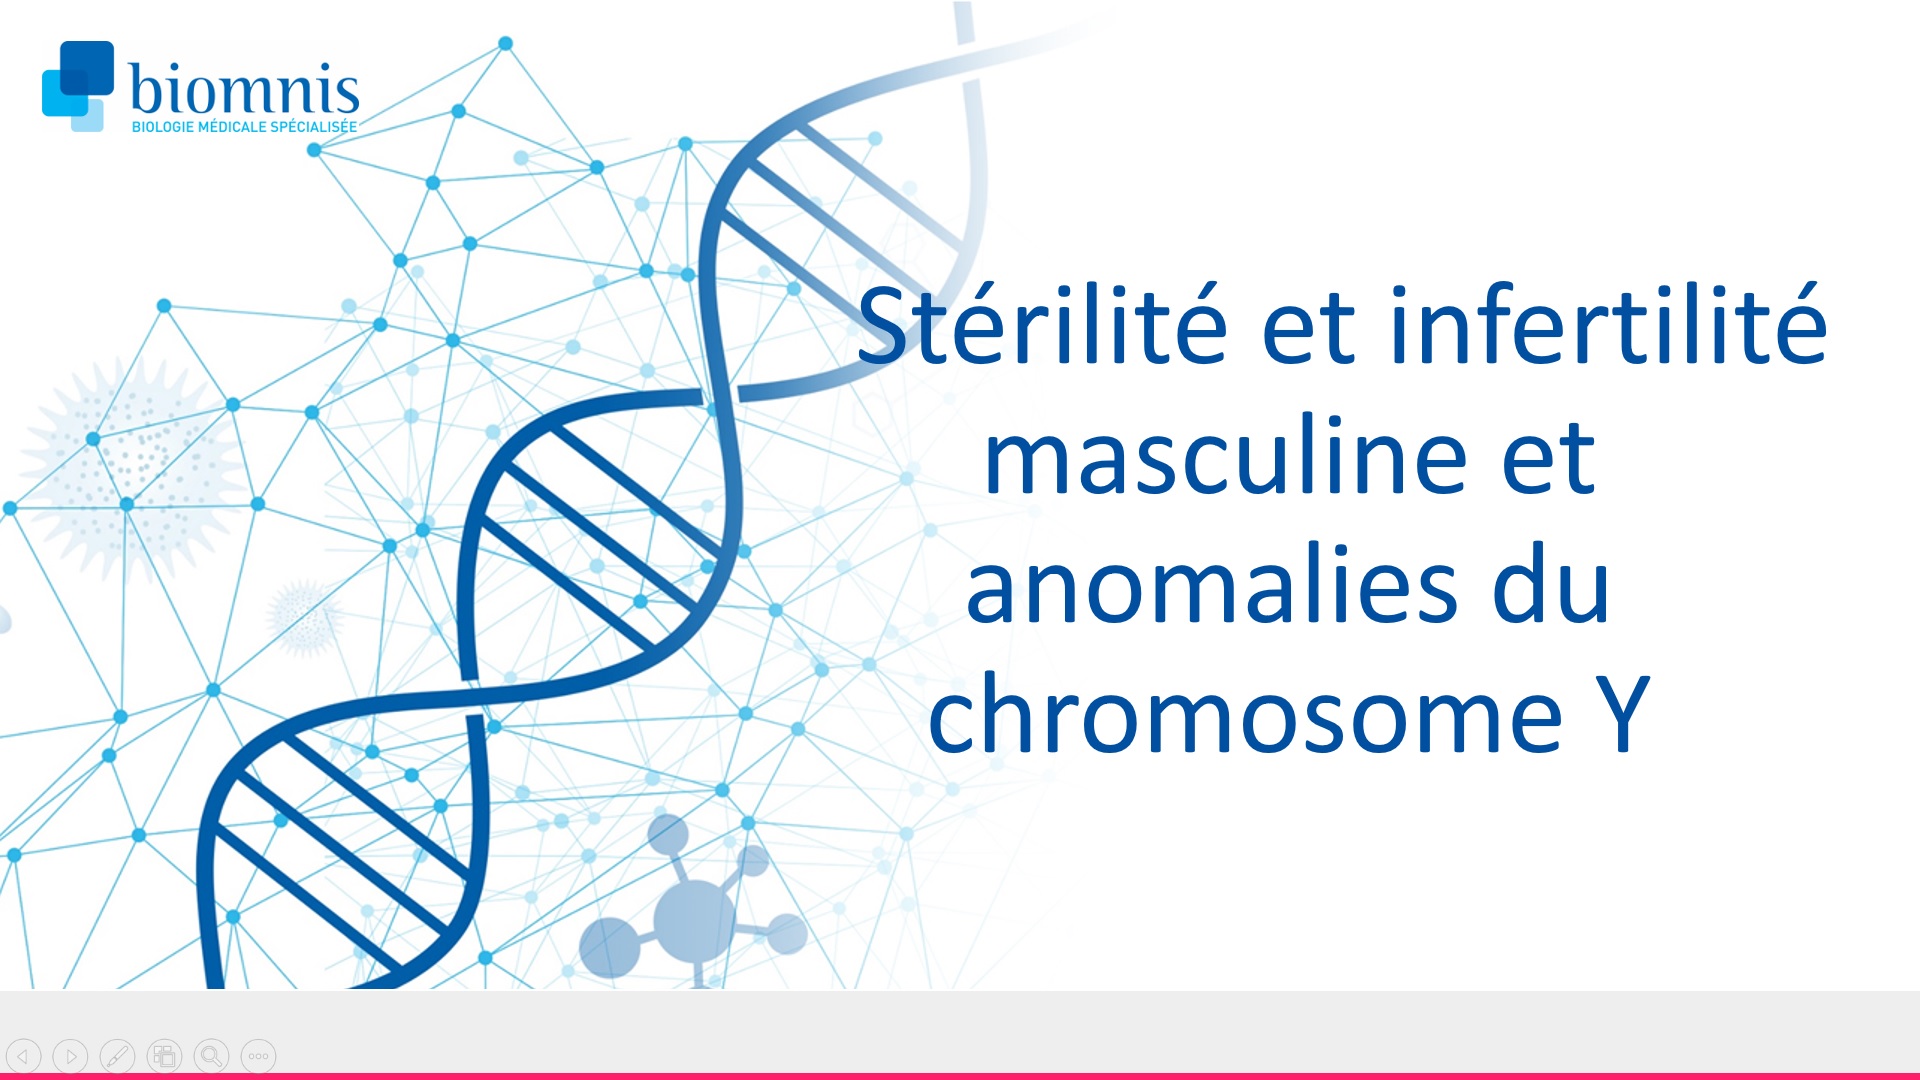 Stérilité et infertilité masculine et anomalies du chromosome Y